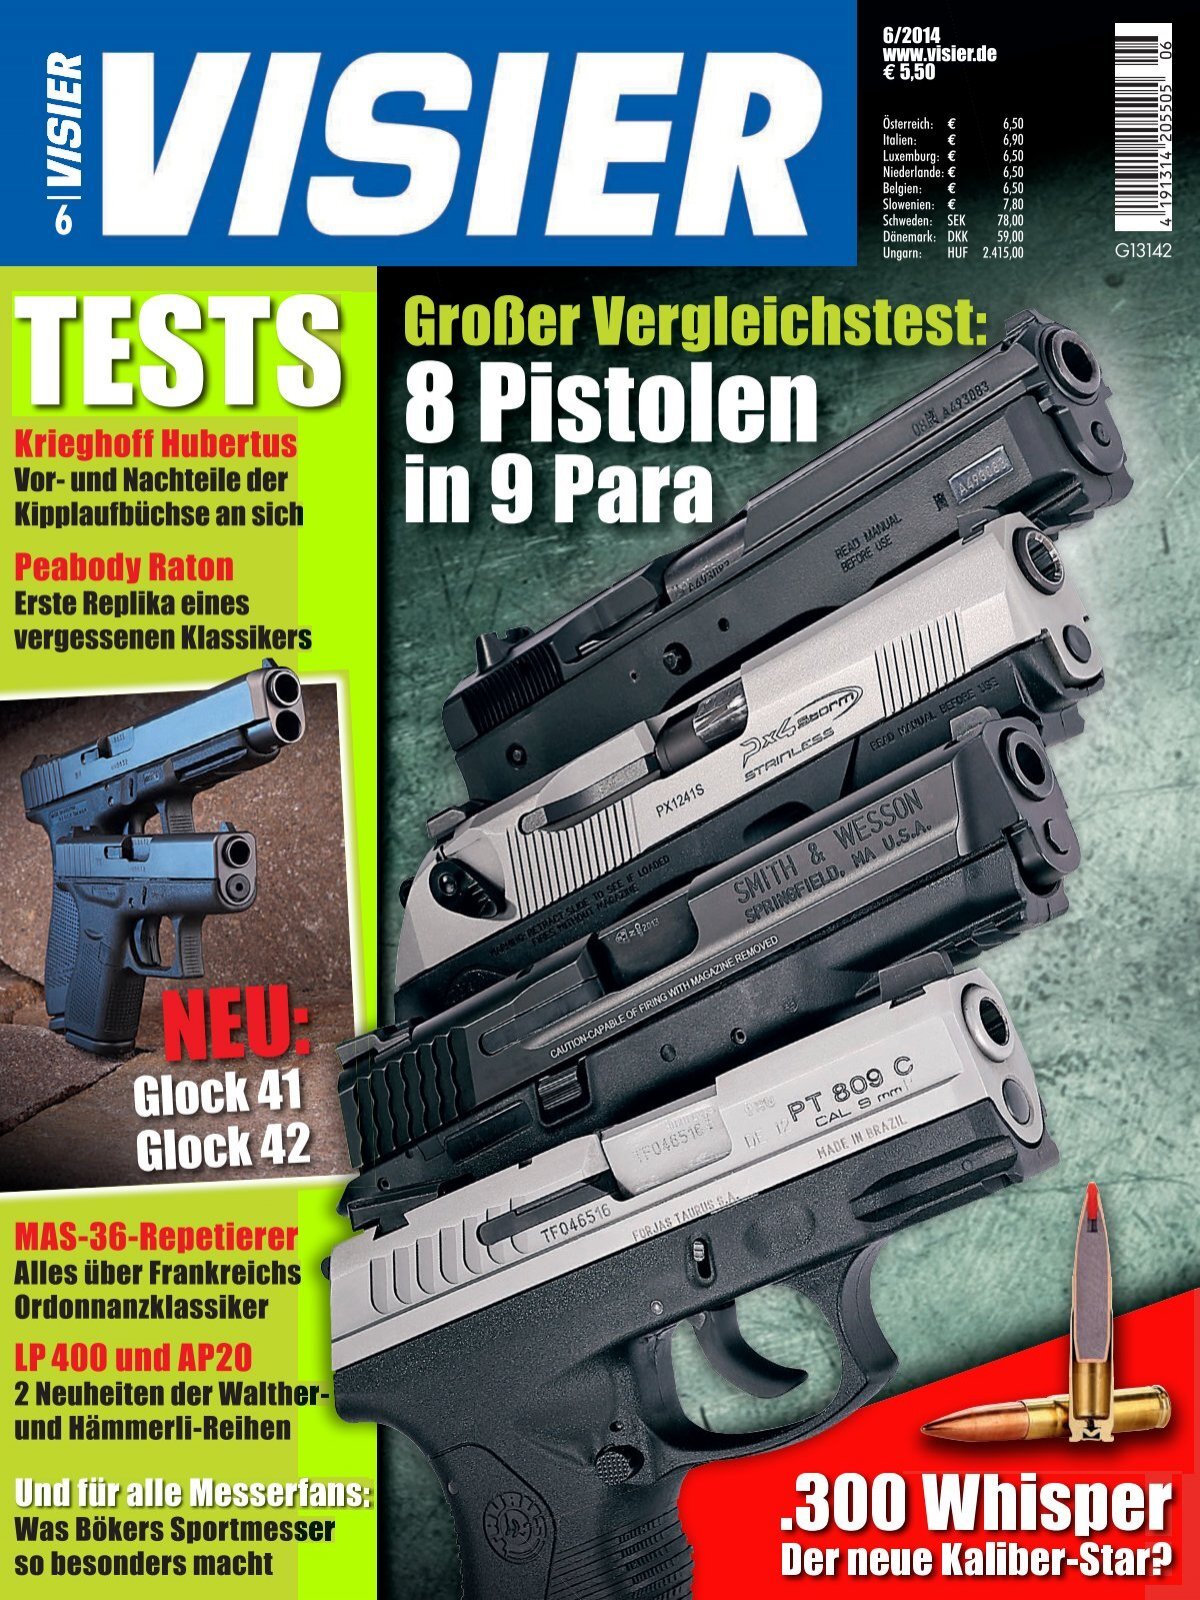 VISIER: Das internationale Waffen-Magazin GroßŸer Vergleichstest